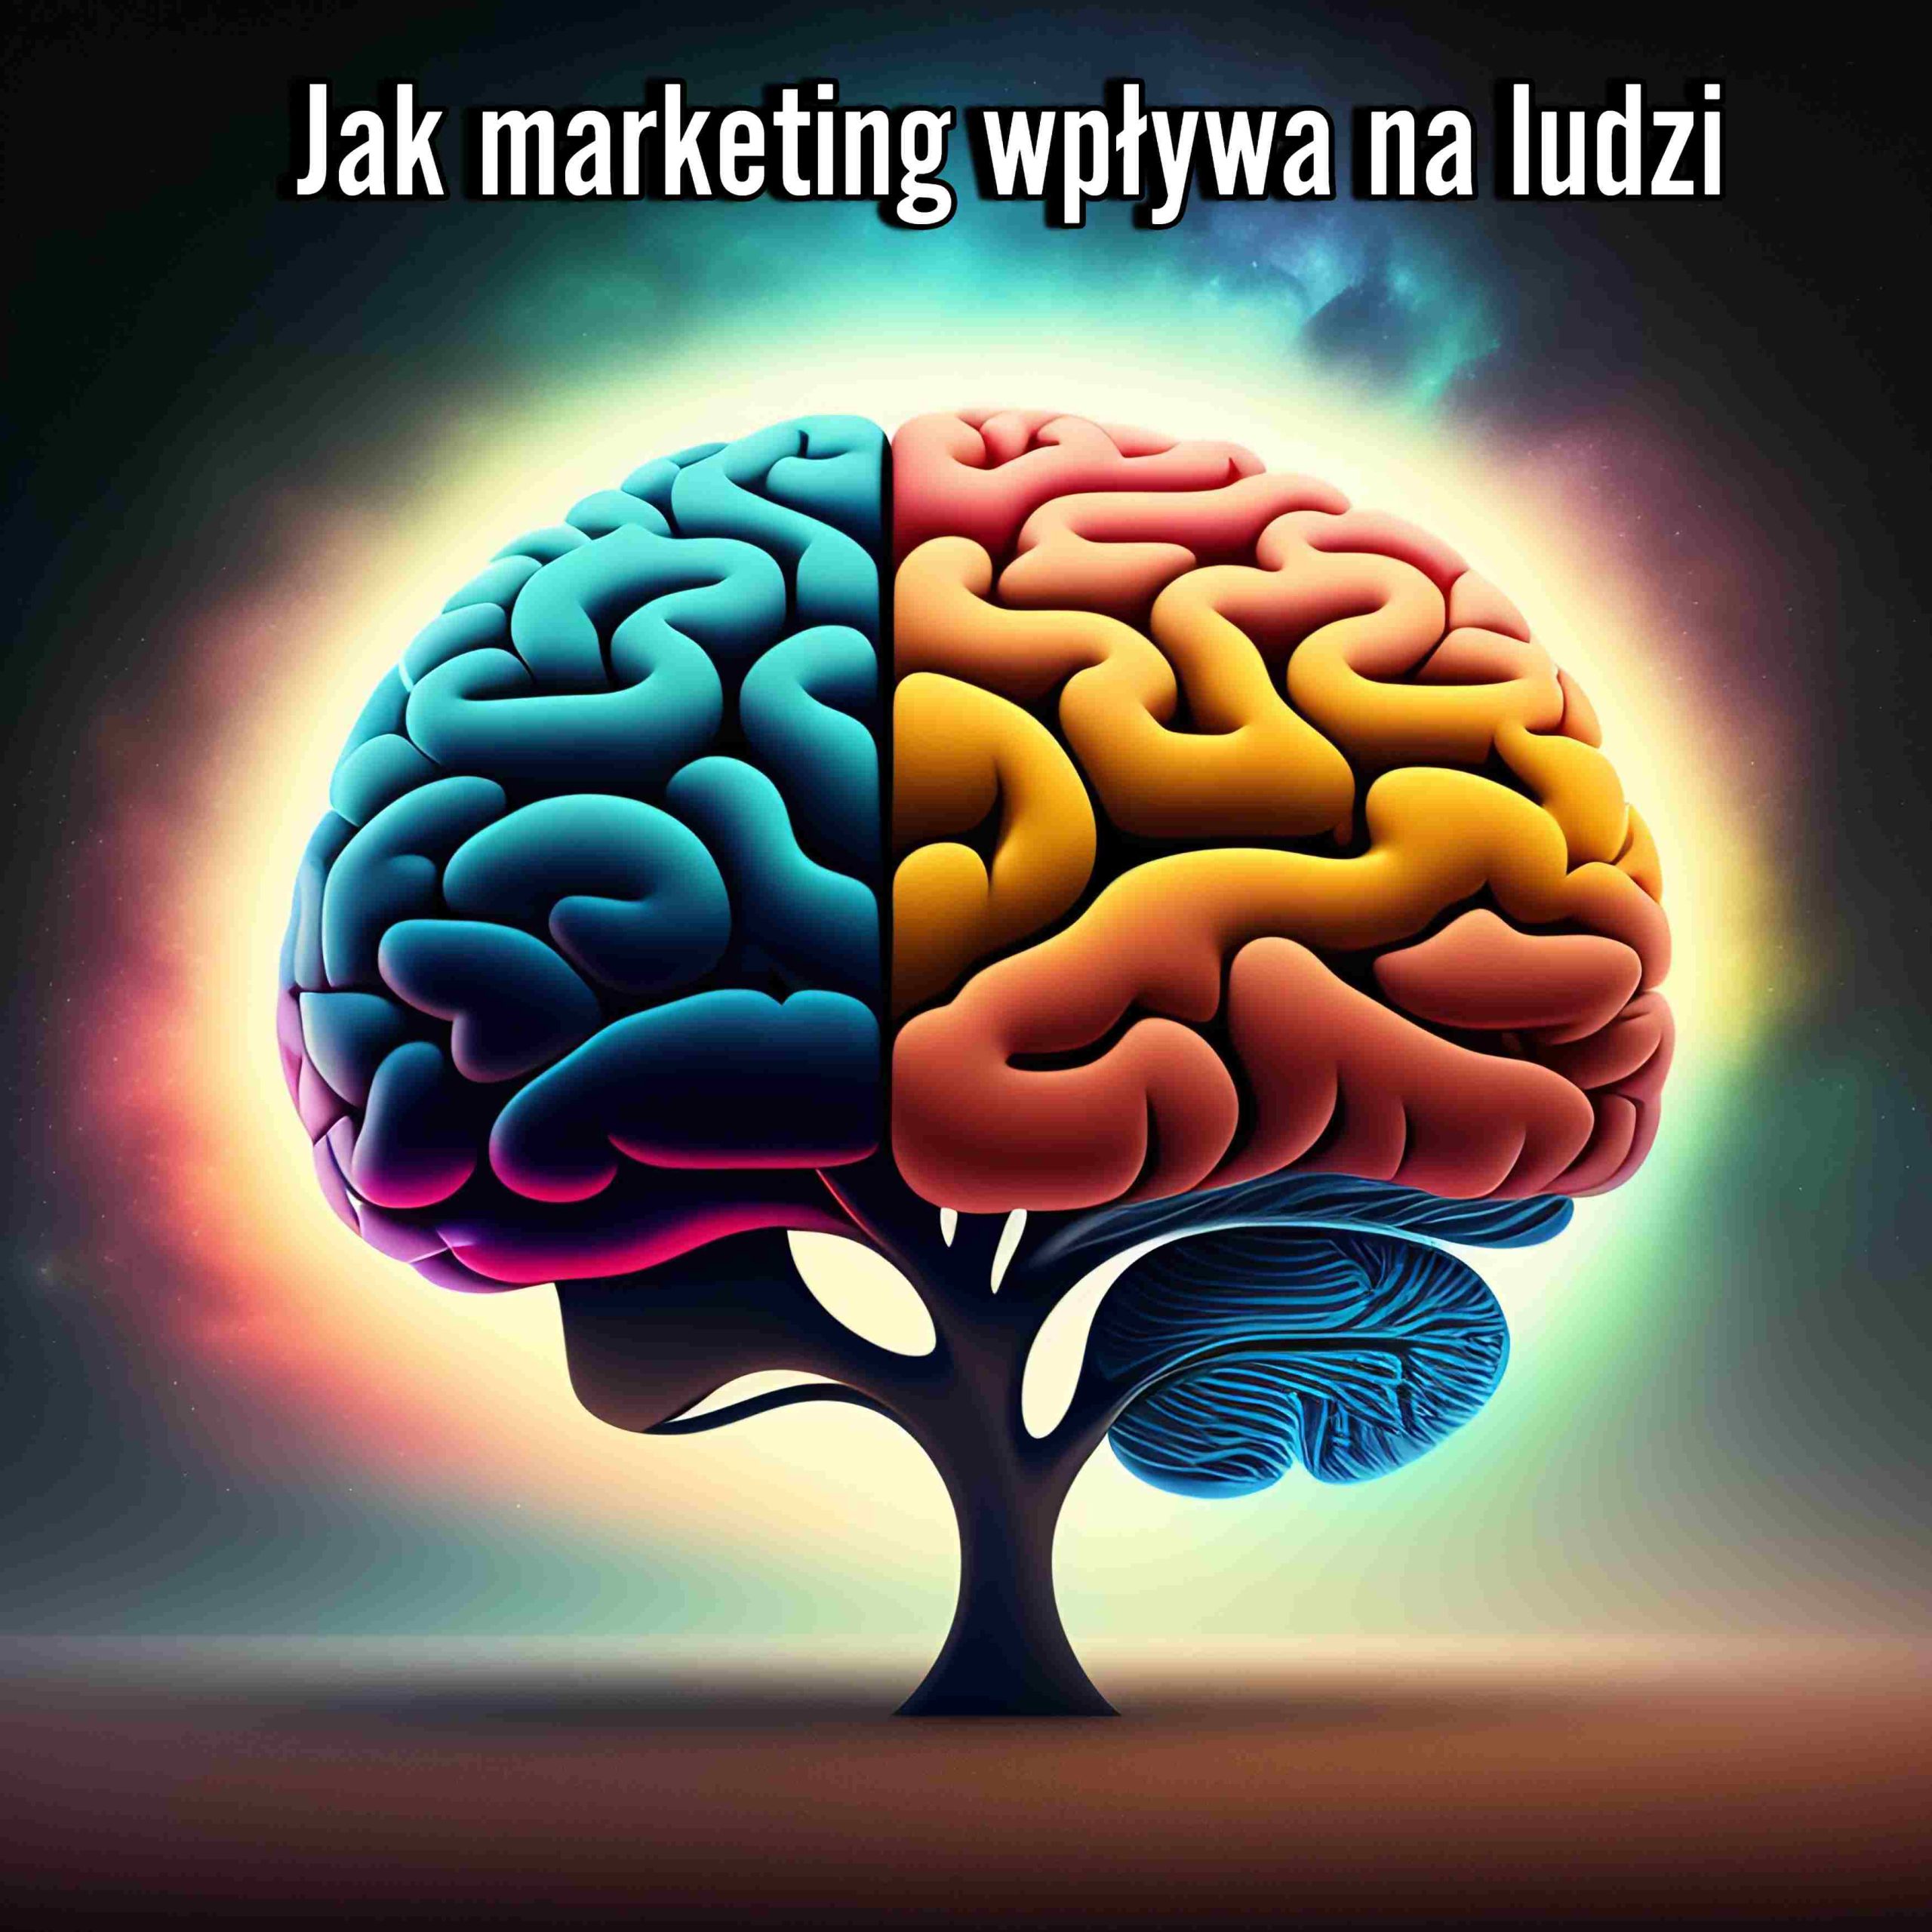 Jak marketing wpływa na ludzi: psychologia zachowań konsumenckich